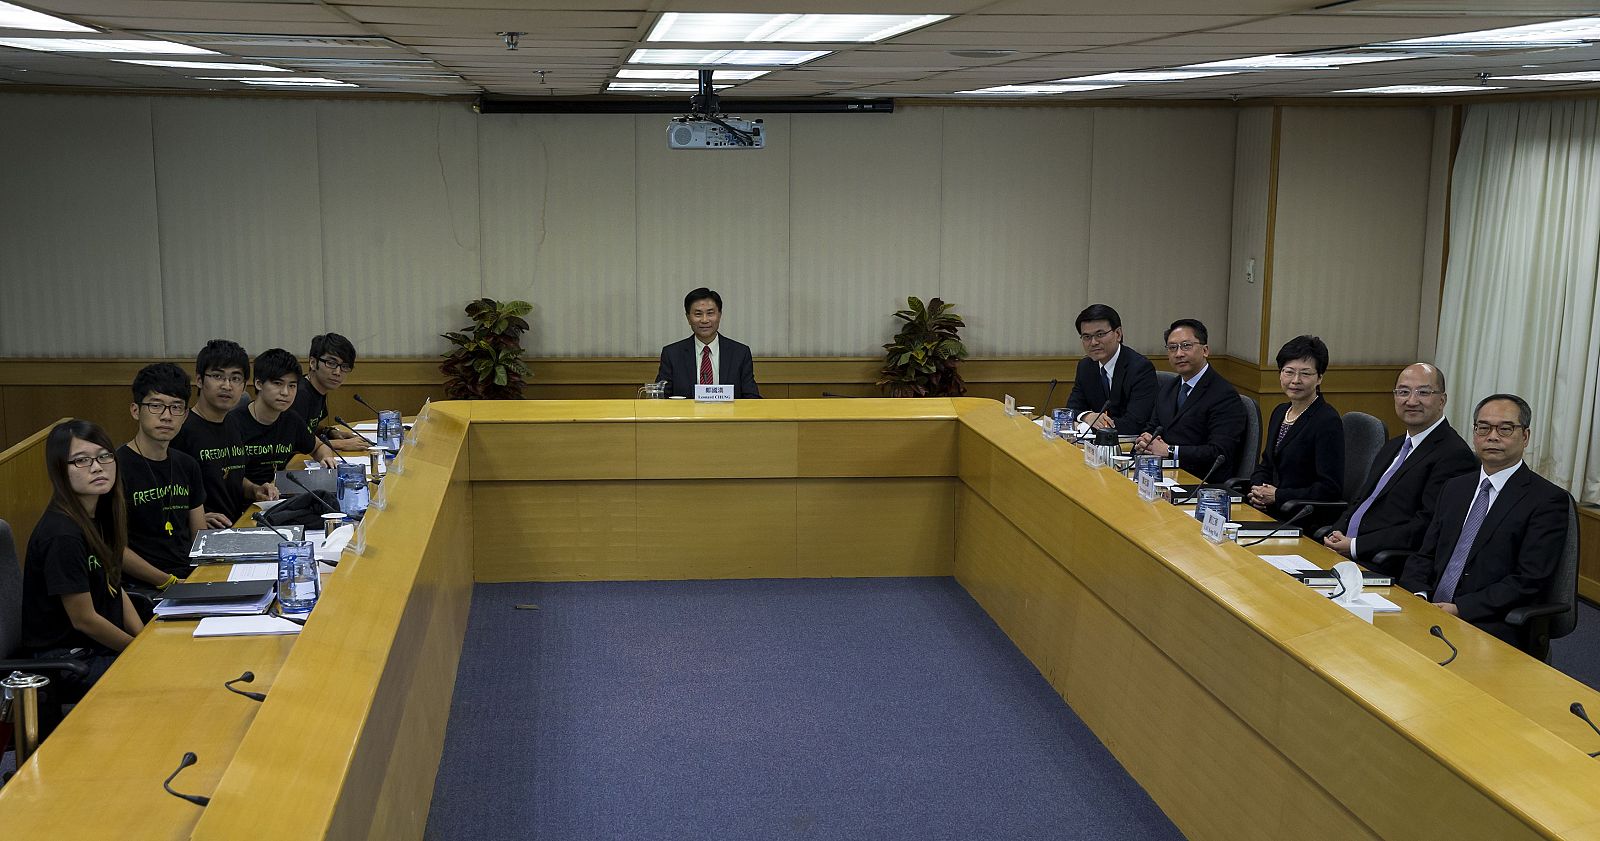 Líderes estudiantiles y representantes del Gobierno de Hong Kong durante la reunión celebrada este martes.